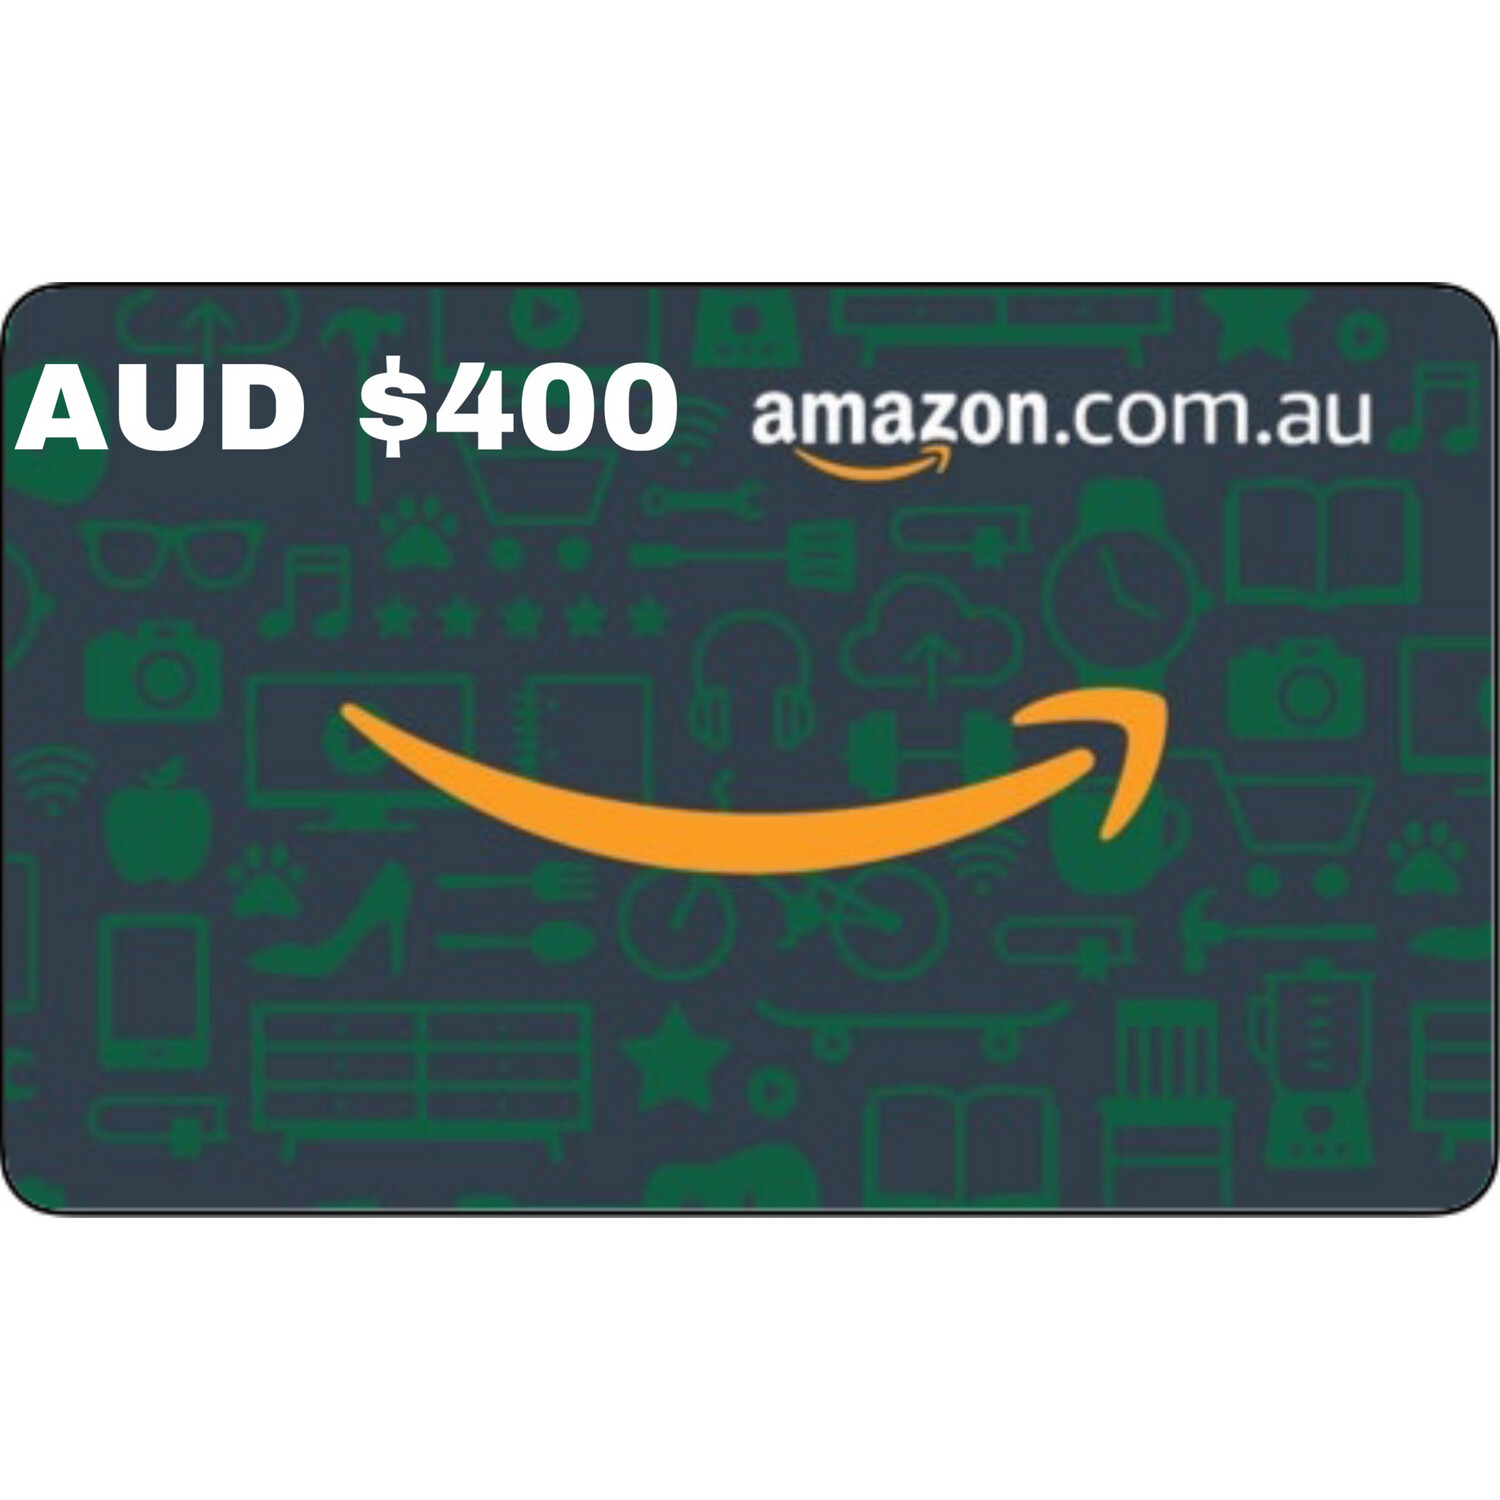 Amazon.com.au Gift Card Australia AUD $400